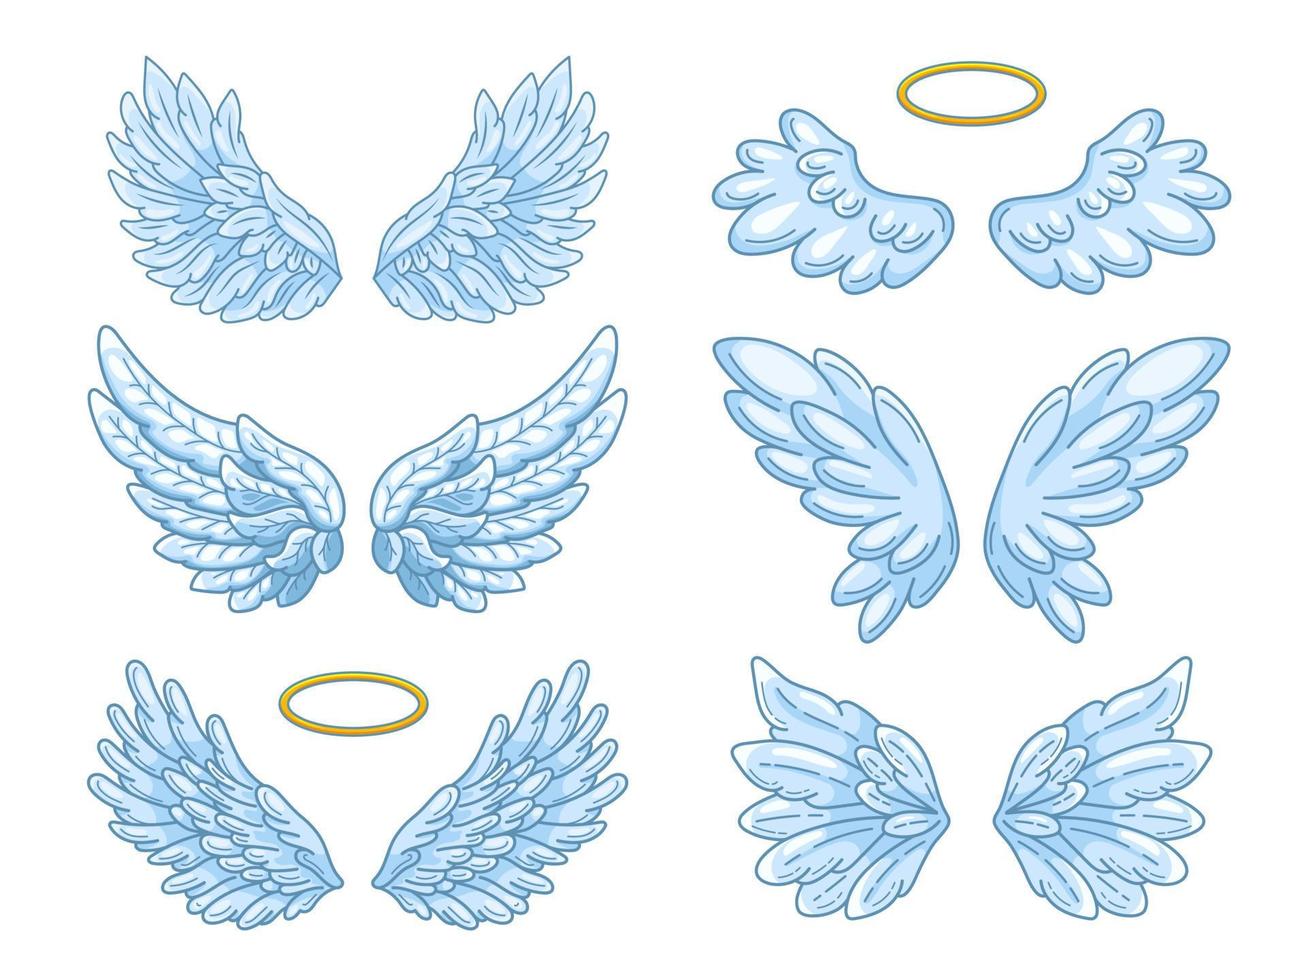 raccolta di ampie ali d'angelo blu con alone dorato. disegno di contorno in stile linea moderna con volume. illustrazione vettoriale isolata su bianco.